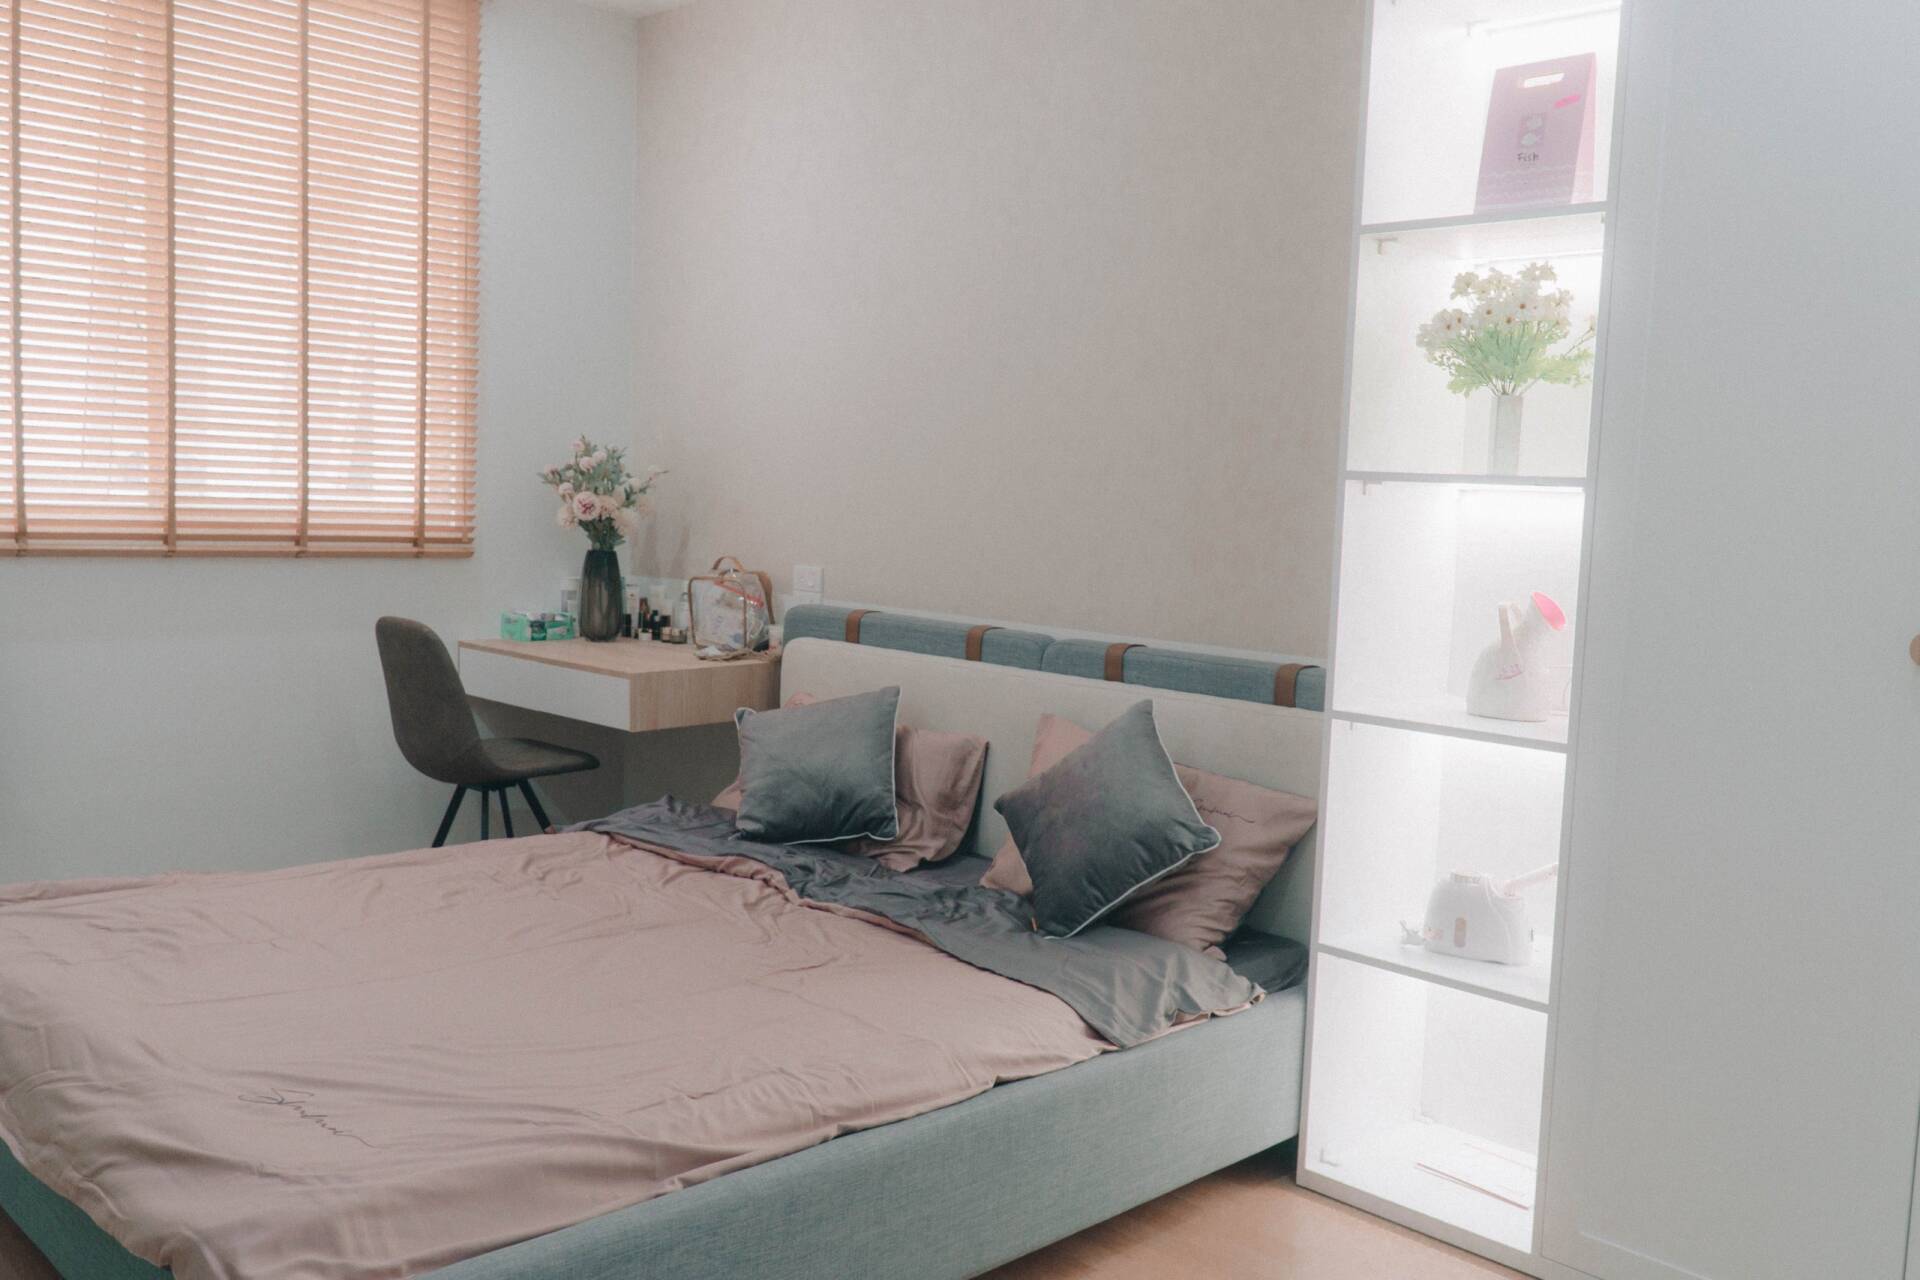 Phòng ngủ master được thiết kế đơn giản theo phong cách nhẹ nhàng mang lại không gian ấm cúng